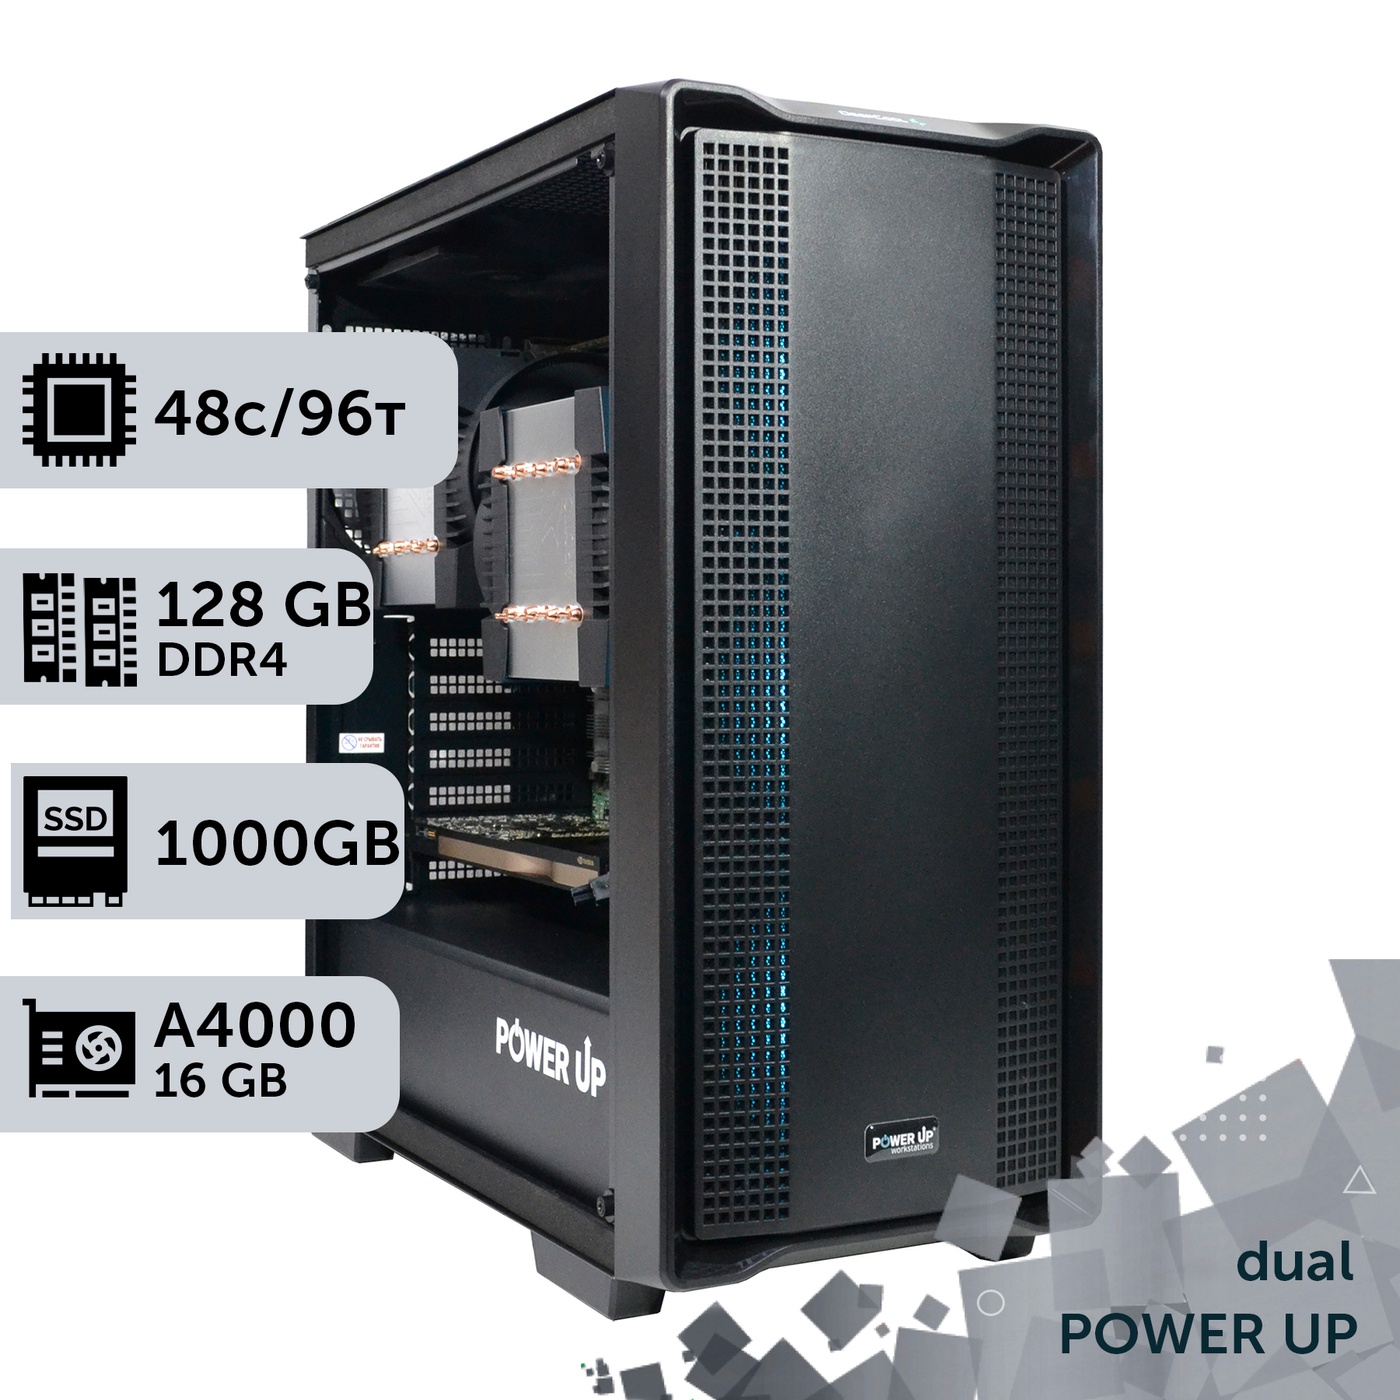 Двухпроцессорная рабочая станция PowerUp #432 AMD EPYC 7F72 x2/128 GB/SSD 1TB/NVIDIA Quadro RTX A4000 16GB